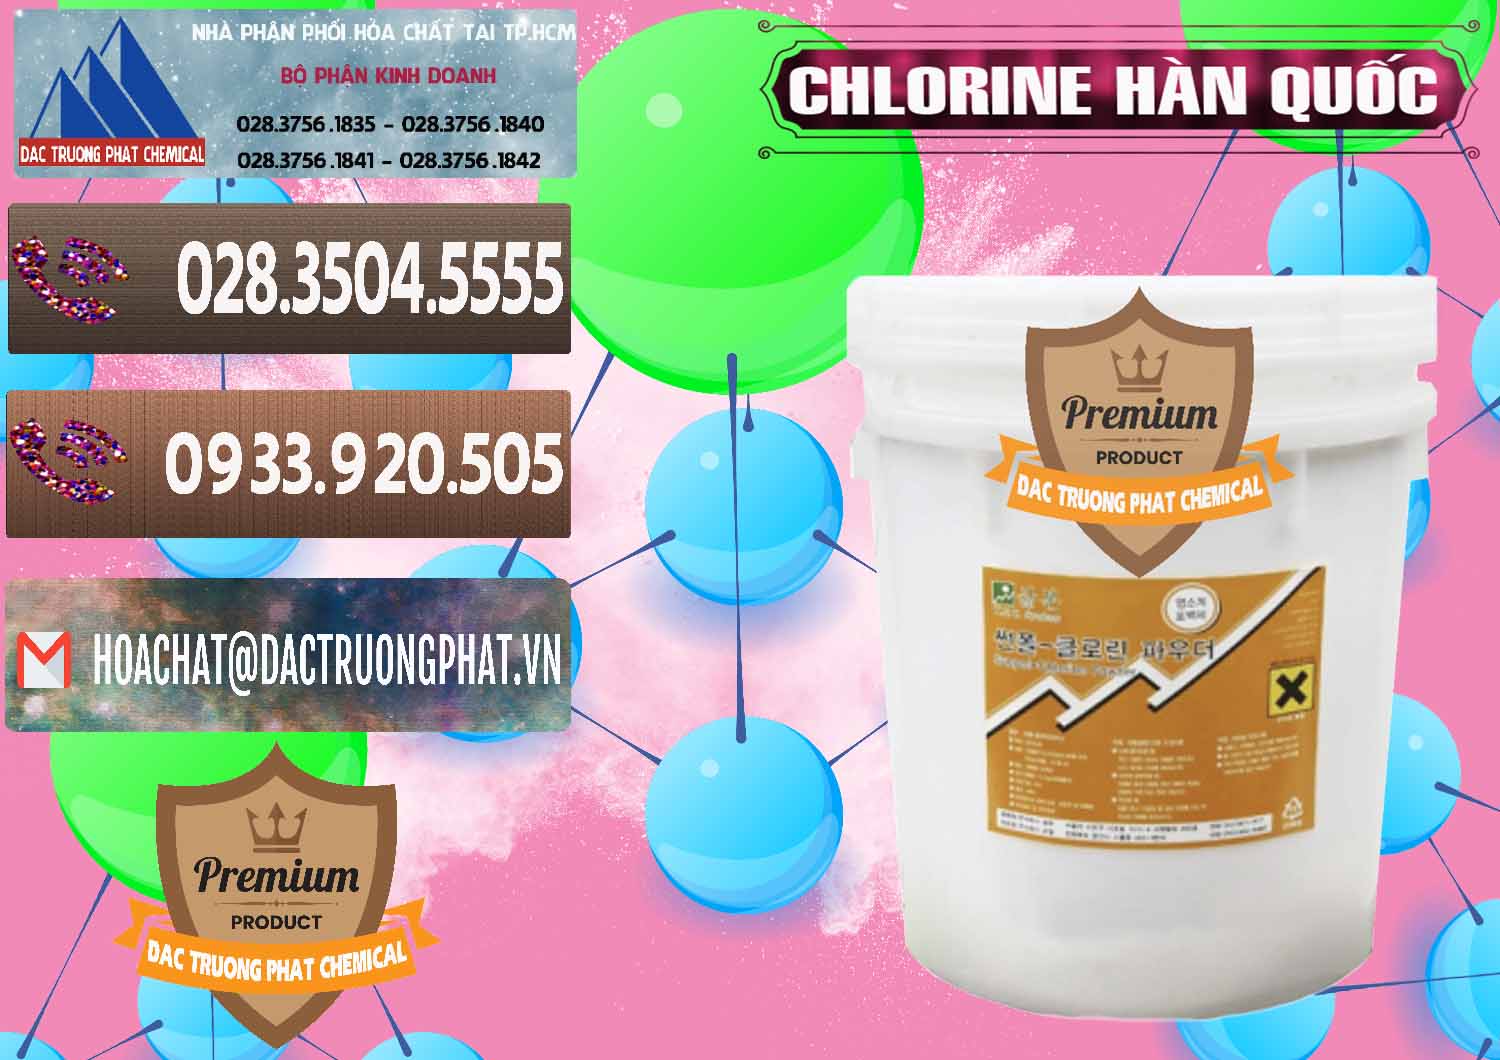 Nhà phân phối và bán Chlorine – Clorin 70% Hàn Quốc Korea - 0345 - Nhà phân phối và bán hóa chất tại TP.HCM - hoachatviet.net